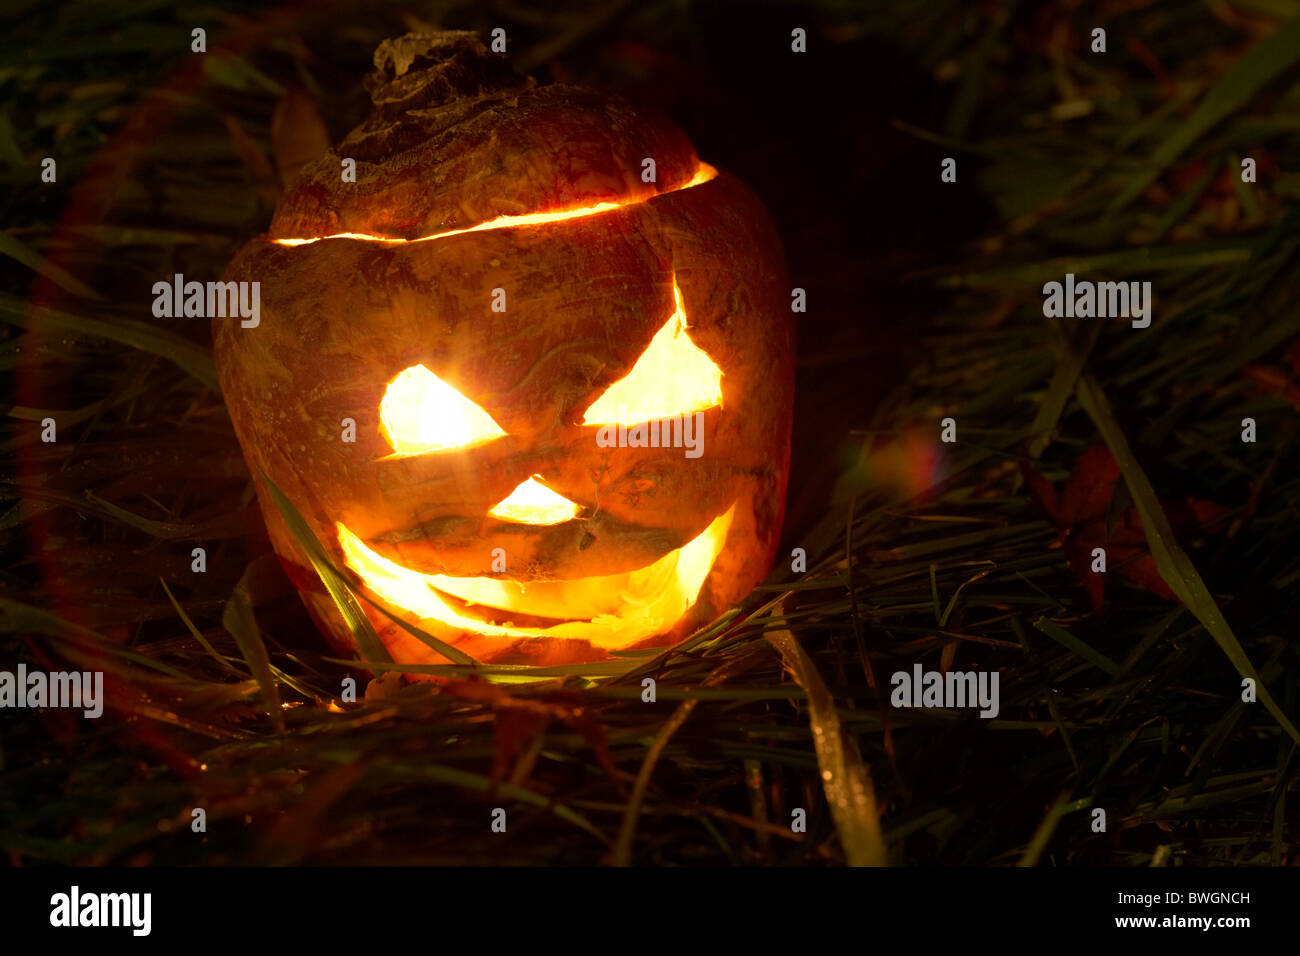 Illuminato rapa halloween jack-o-lantern per allontanare gli spiriti maligni. Tradizionalmente in Irlanda o rape svedesi sono stati utilizzati Foto Stock